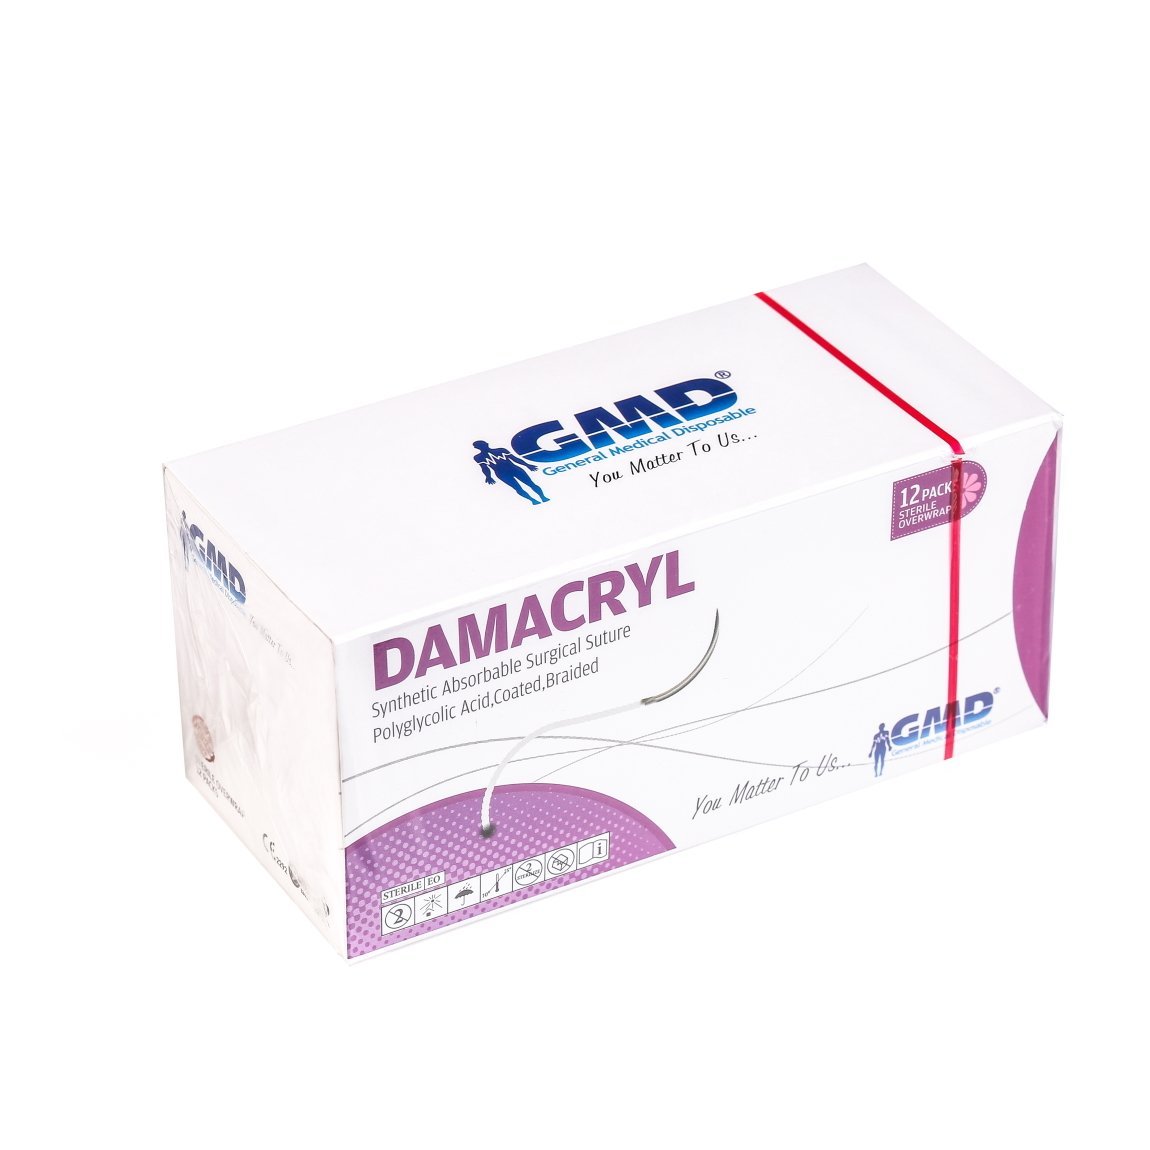 Damacryl Emilebilir Cerrahi Sütür - PGA İplik - USP:2-0-75cm - 1/2 Daire 30 mm - Yuvarlak İğne